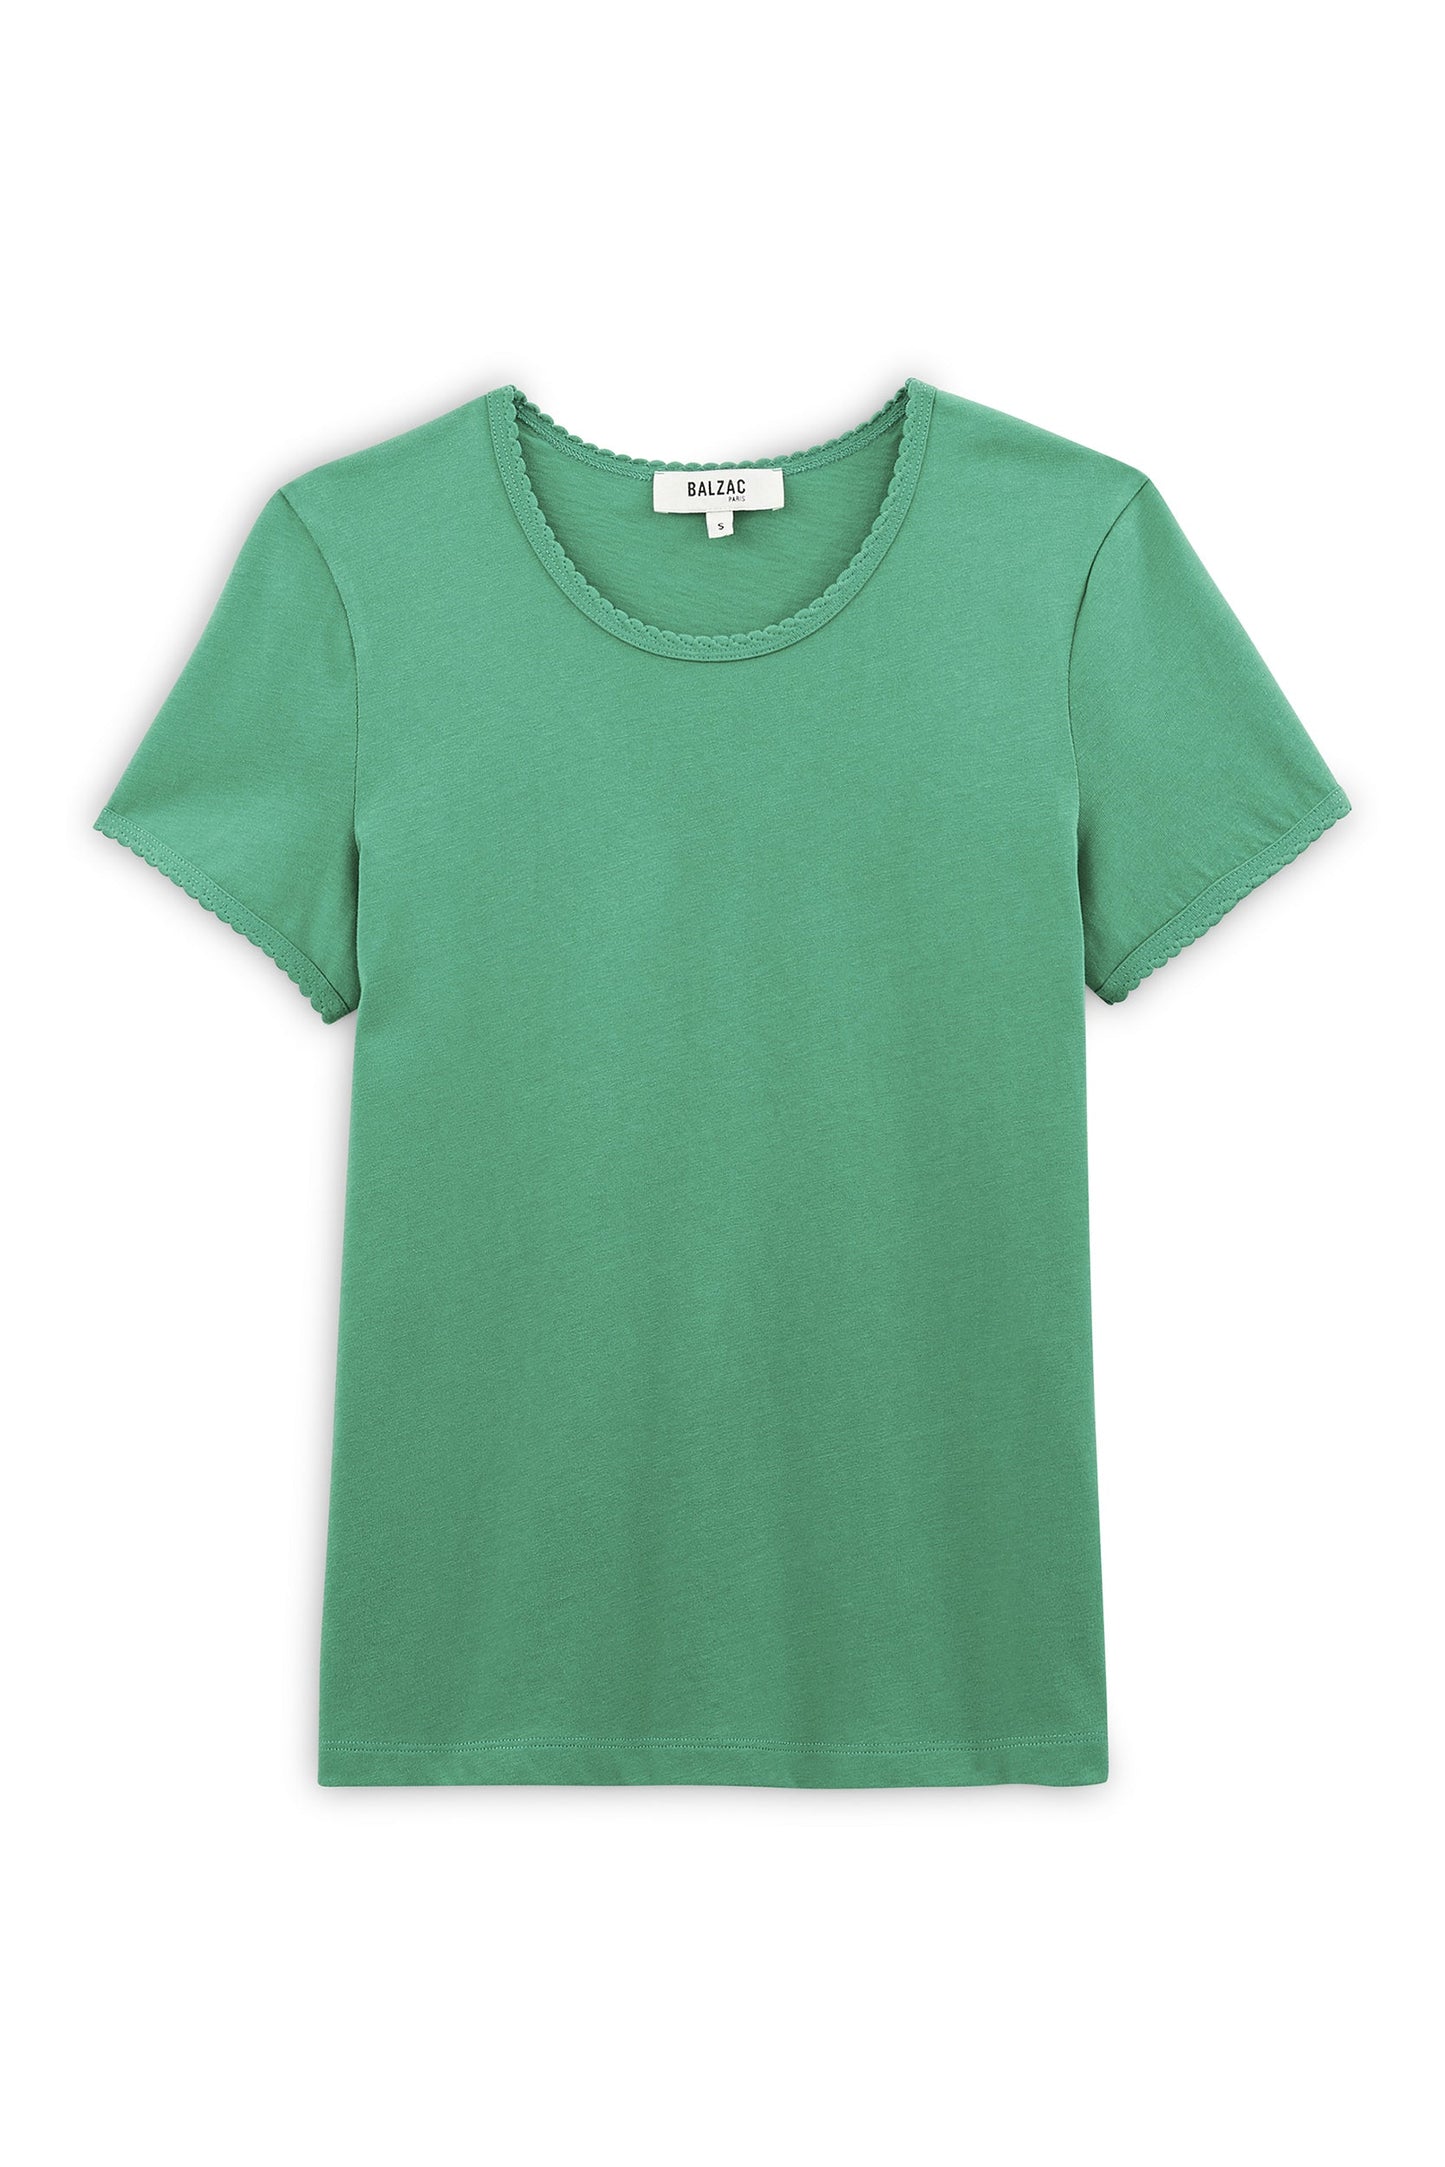 Willow green t-shirt